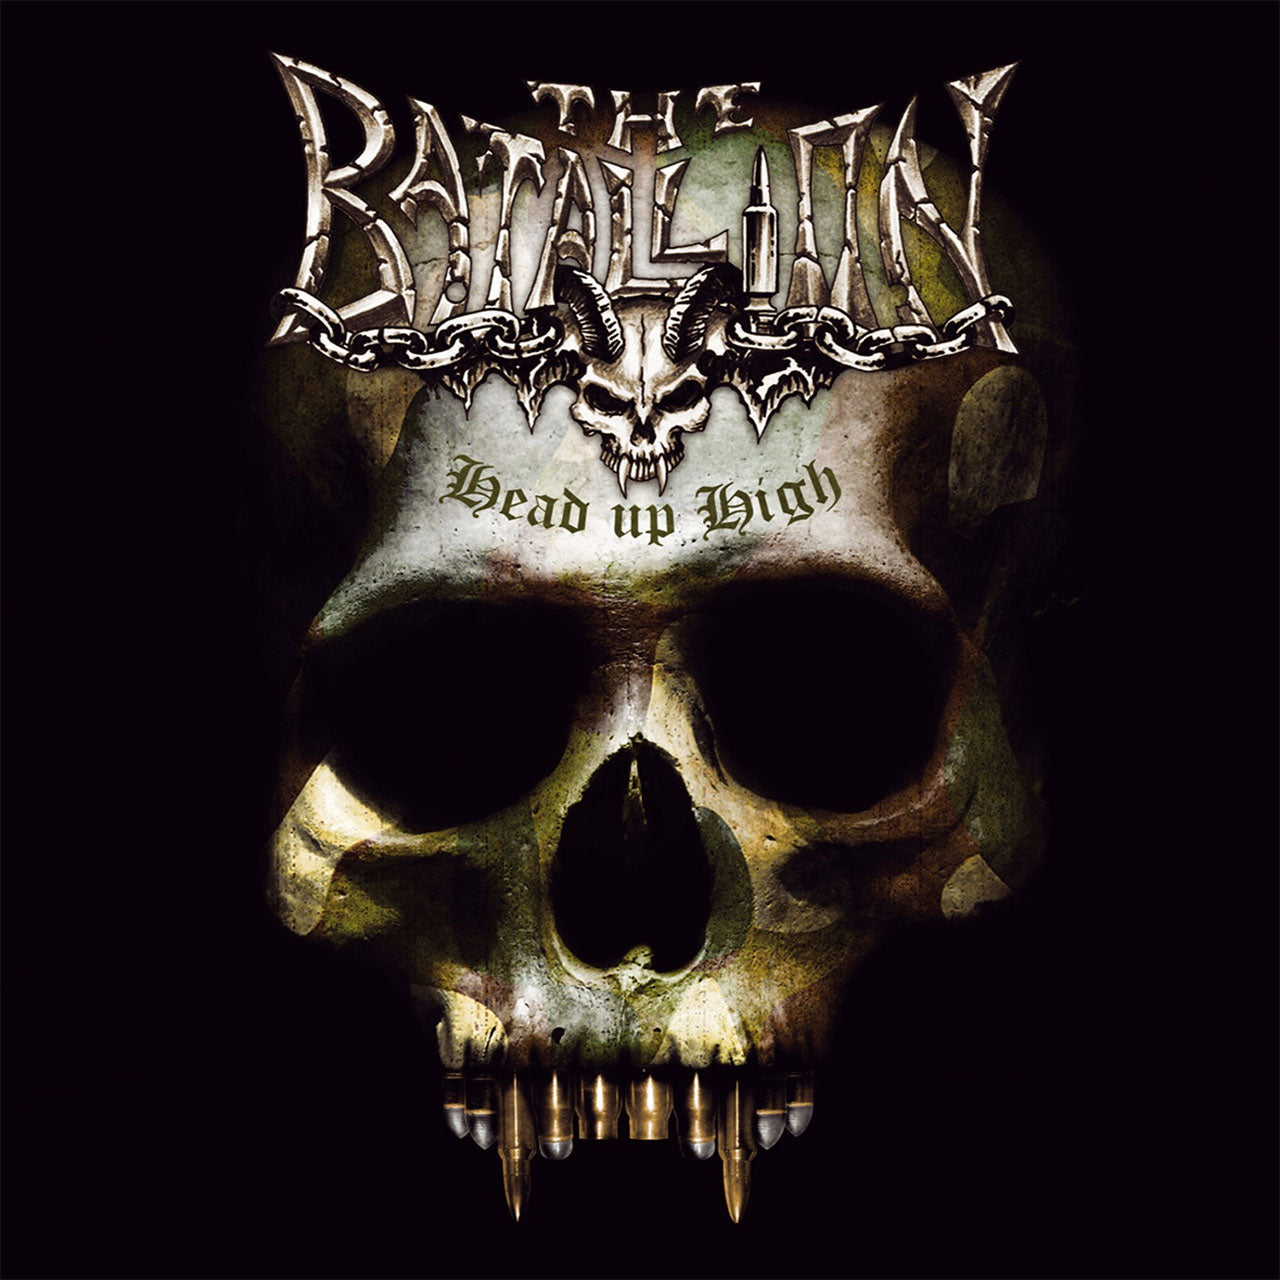 The Batallion - Head Up High (CD)